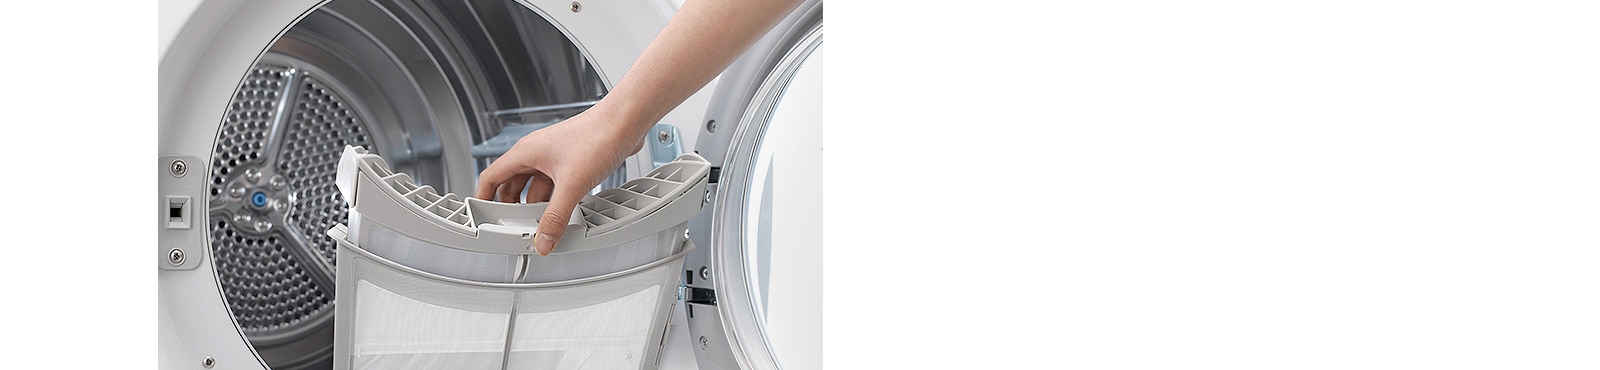 Dryer-EU-Vivace-V900-VC2-TUV-White-04-Dual-Filter-D